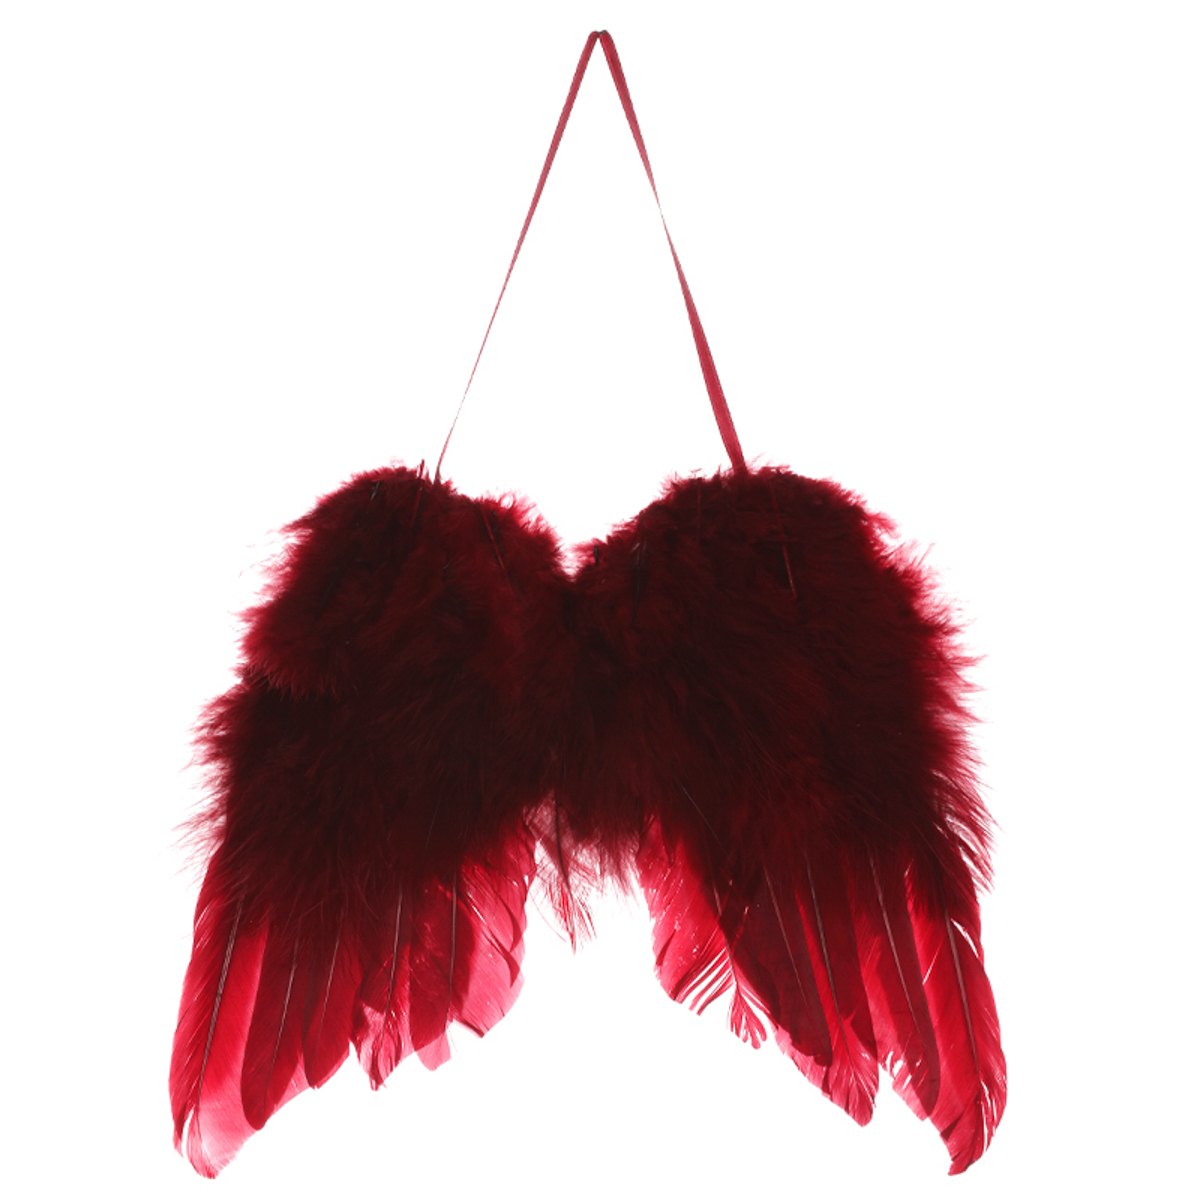 Andělská křídla z peří , barva červená, baleno 6 ks. Cena za 1 ks.